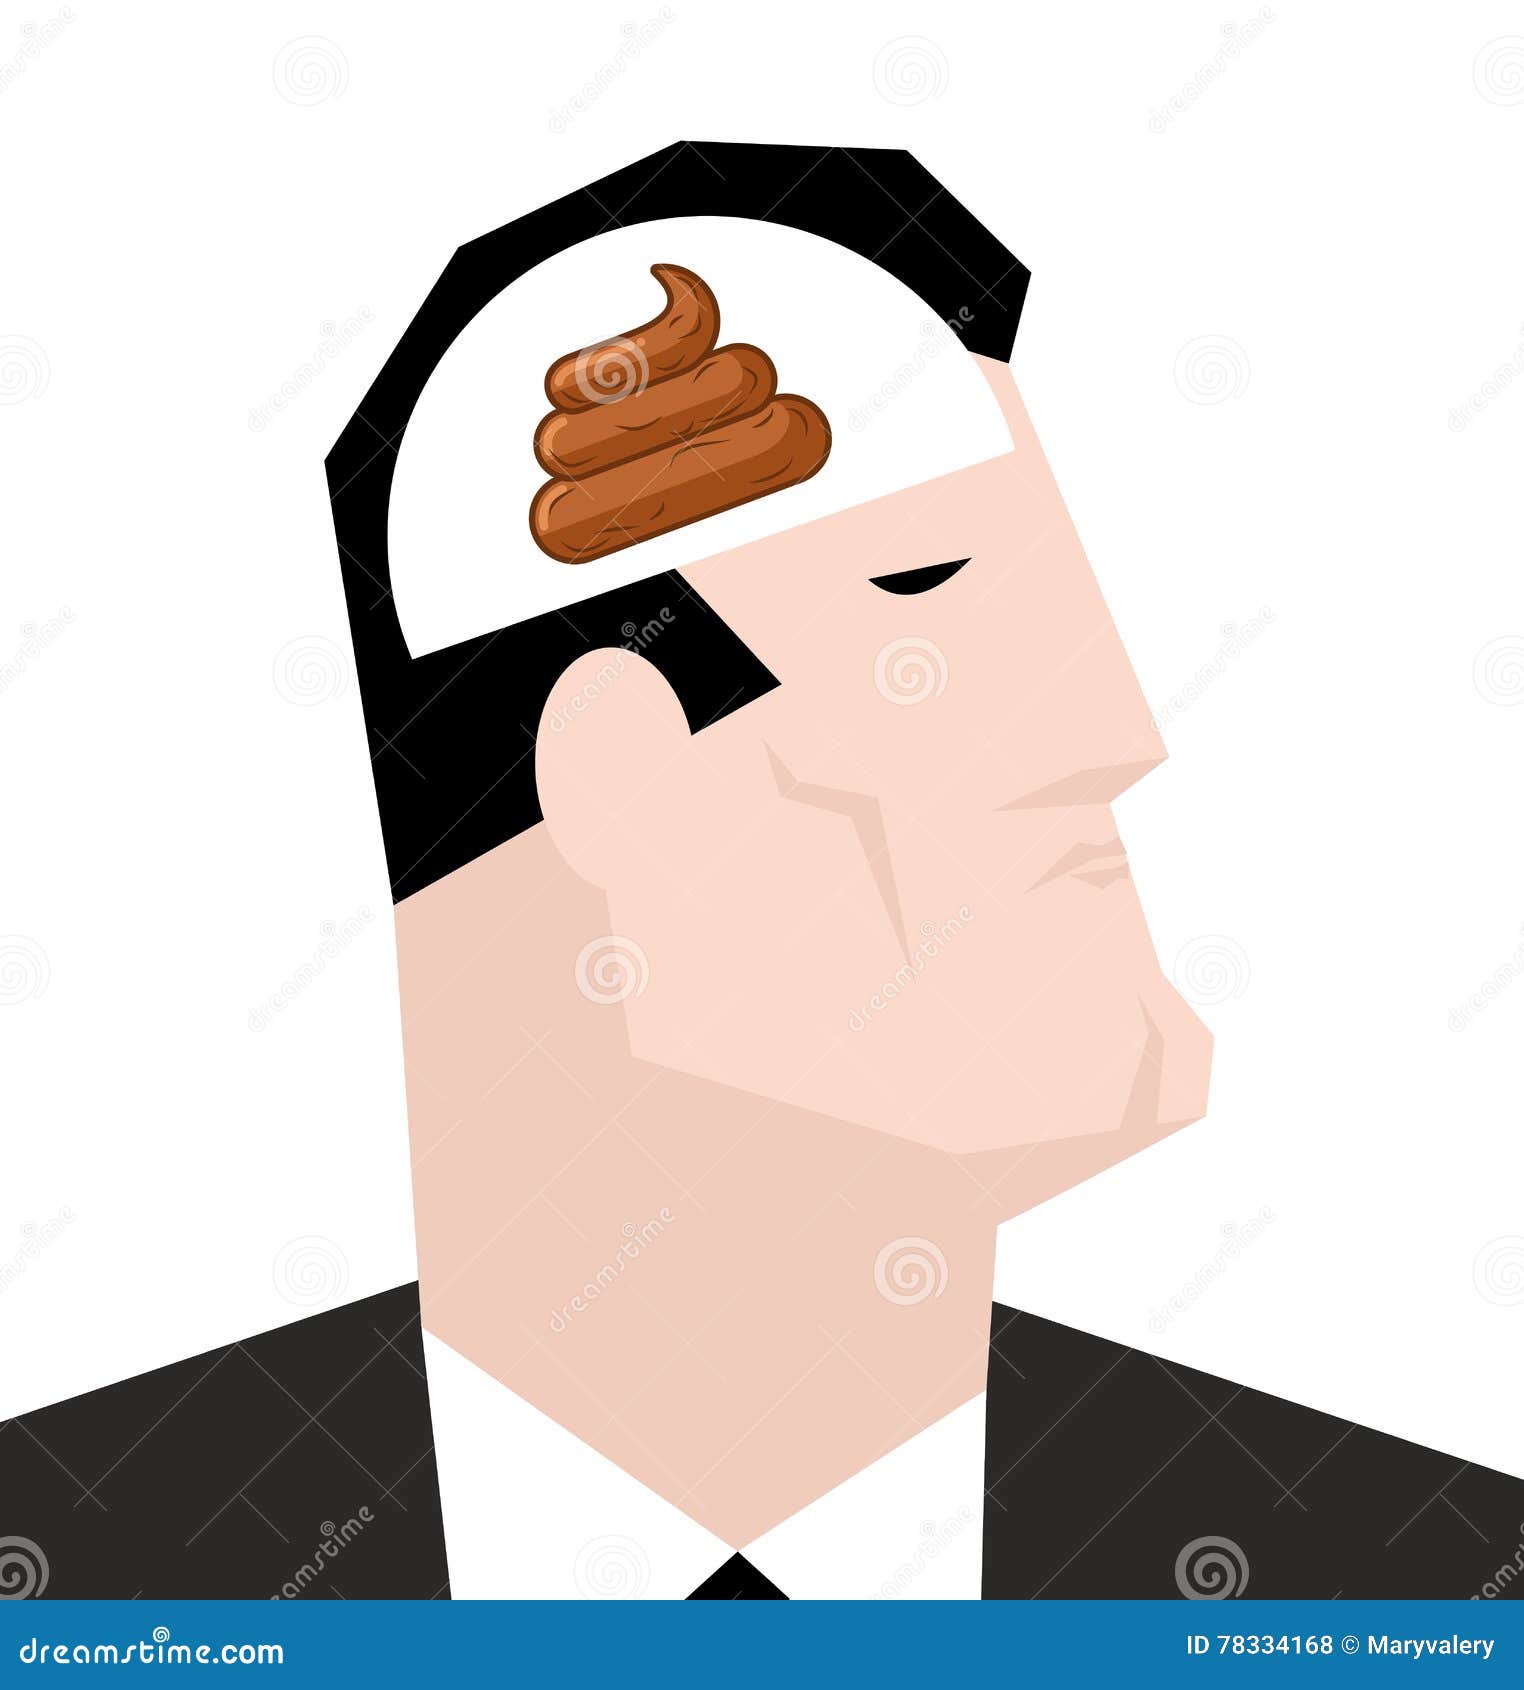 Почему нету головы. Человек с пустой головой. Пустая голова. Иллюстрация человек с пустой головой.